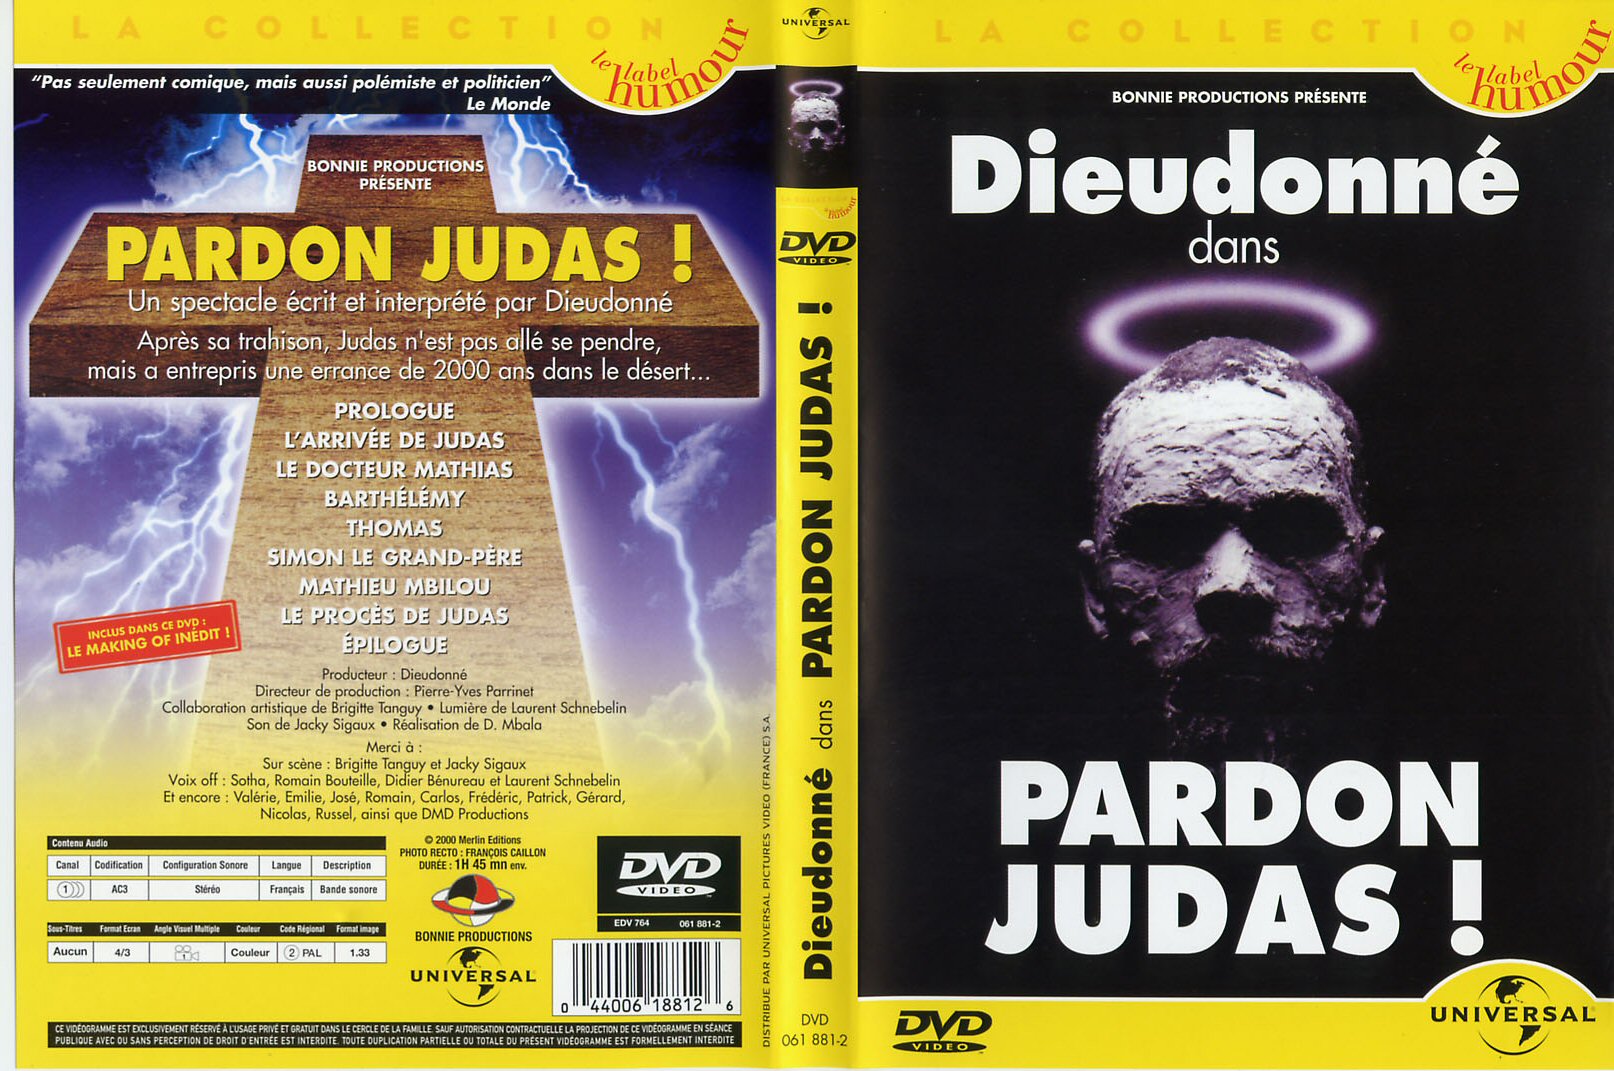 Jaquette DVD Dieudonne - Pardon judas